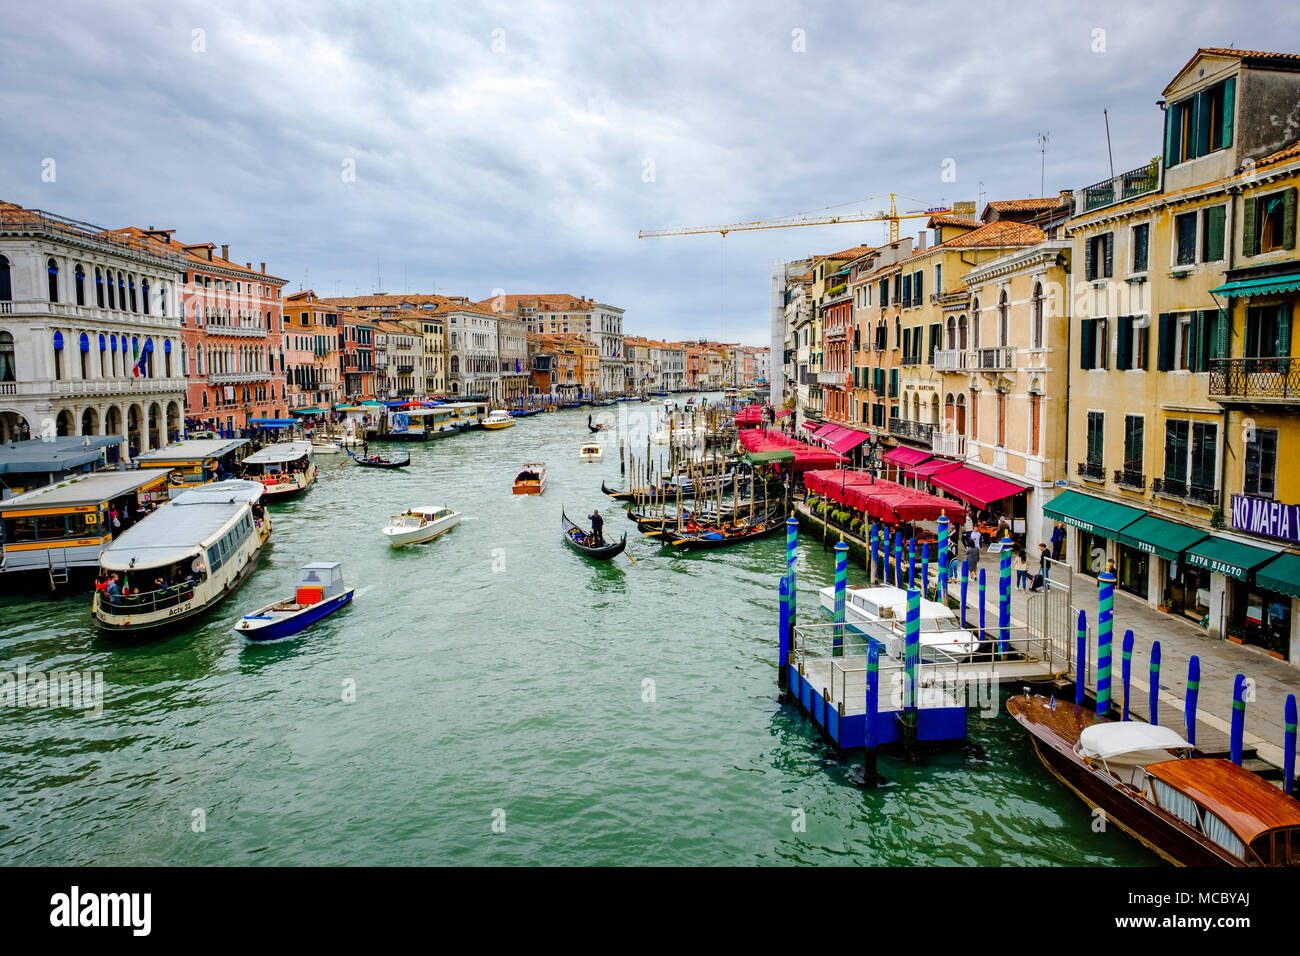 View of the Grand Canal from the Rialto Bridge (Ponte di Rialto), Venice, Italy Stock Photo